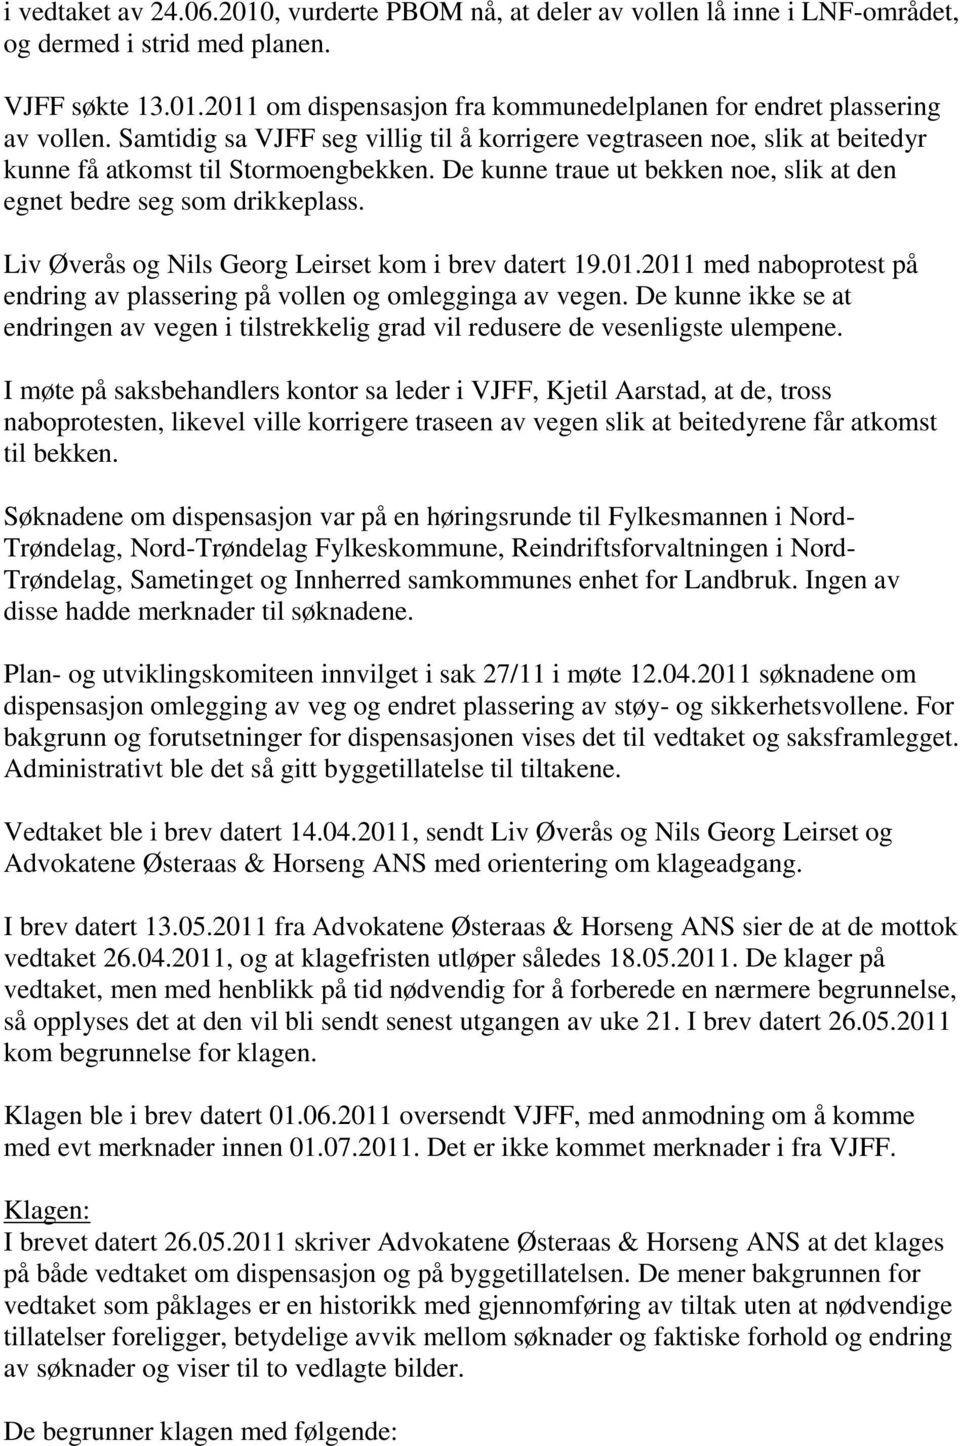 Liv Øverås og Nils Georg Leirset kom i brev datert 19.01.2011 med naboprotest på endring av plassering på vollen og omlegginga av vegen.